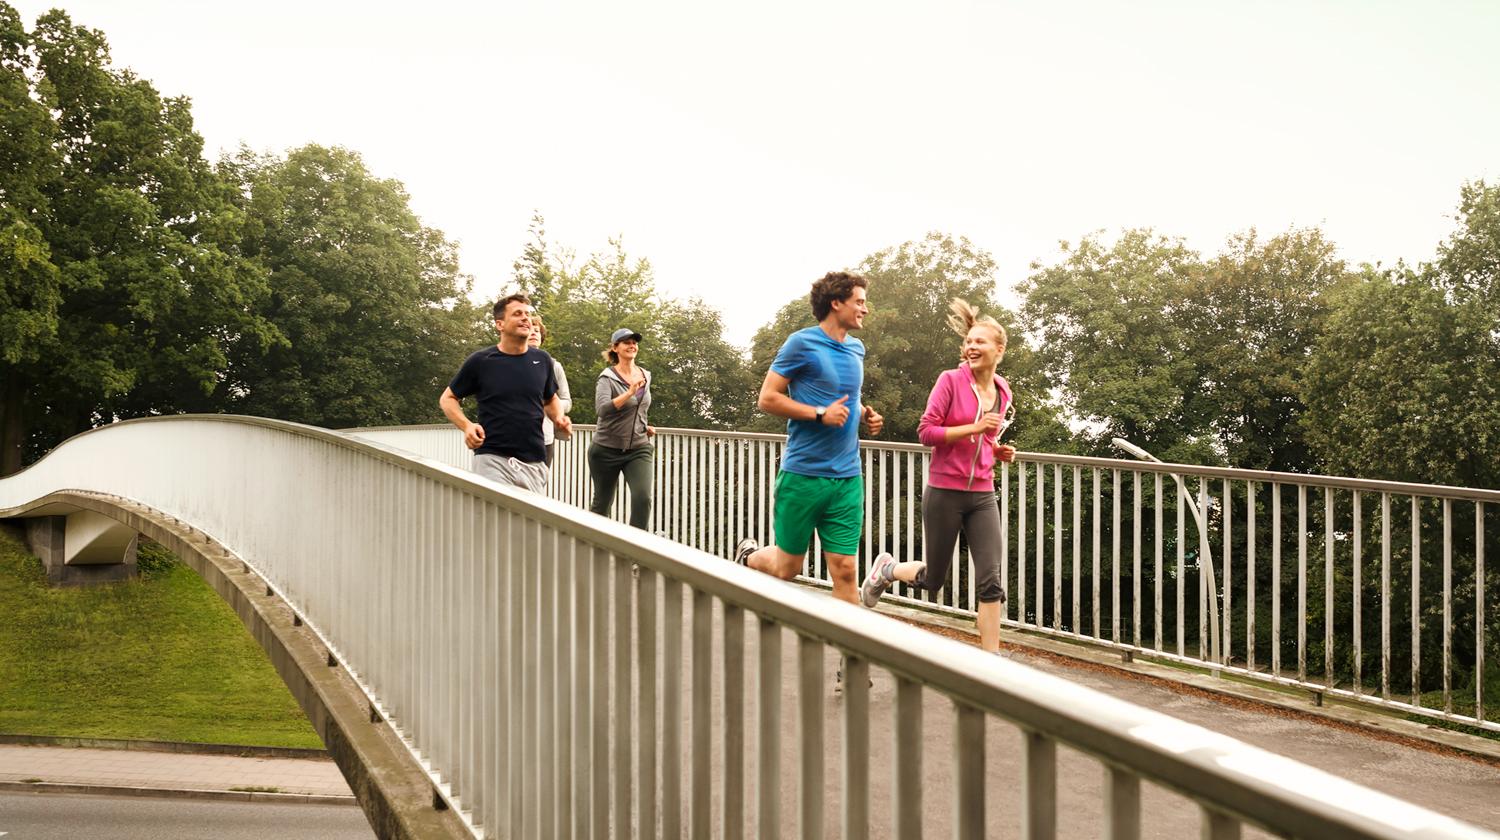 Athleten auf einer Brücke | Bildquelle: BARMER